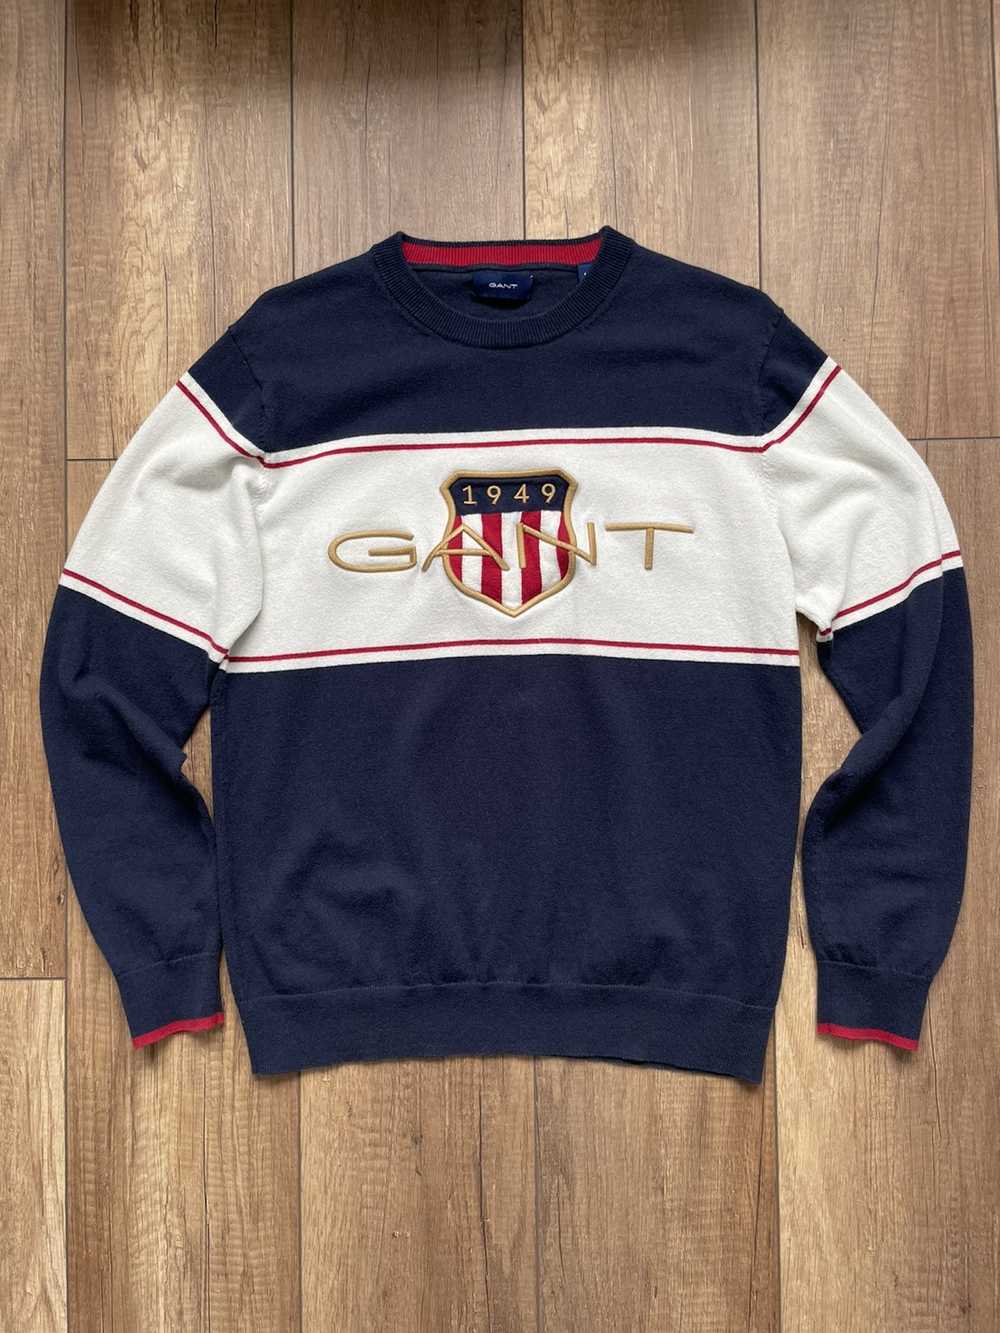 Gant × Streetwear × Vintage Gant sweatshirt vinta… - image 1